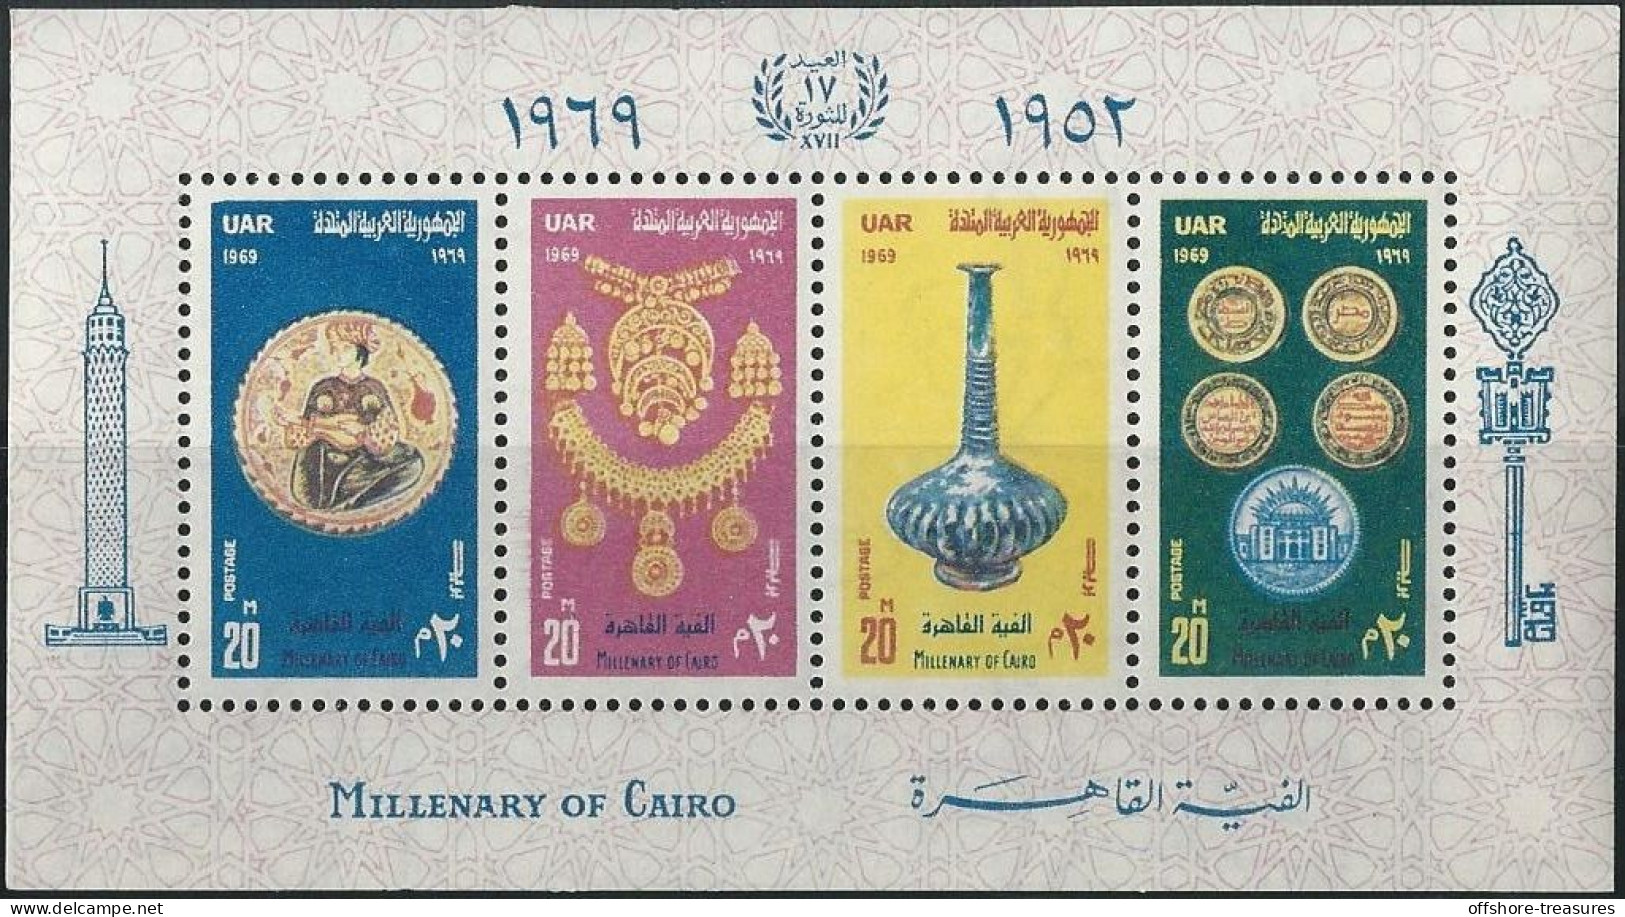 EGYPT 1952 - 1969 CAIRO MILLENARY SOUVENIR SHEET MNH - SG CAT £19 17 YEARS REVOLUTION - Briefe U. Dokumente